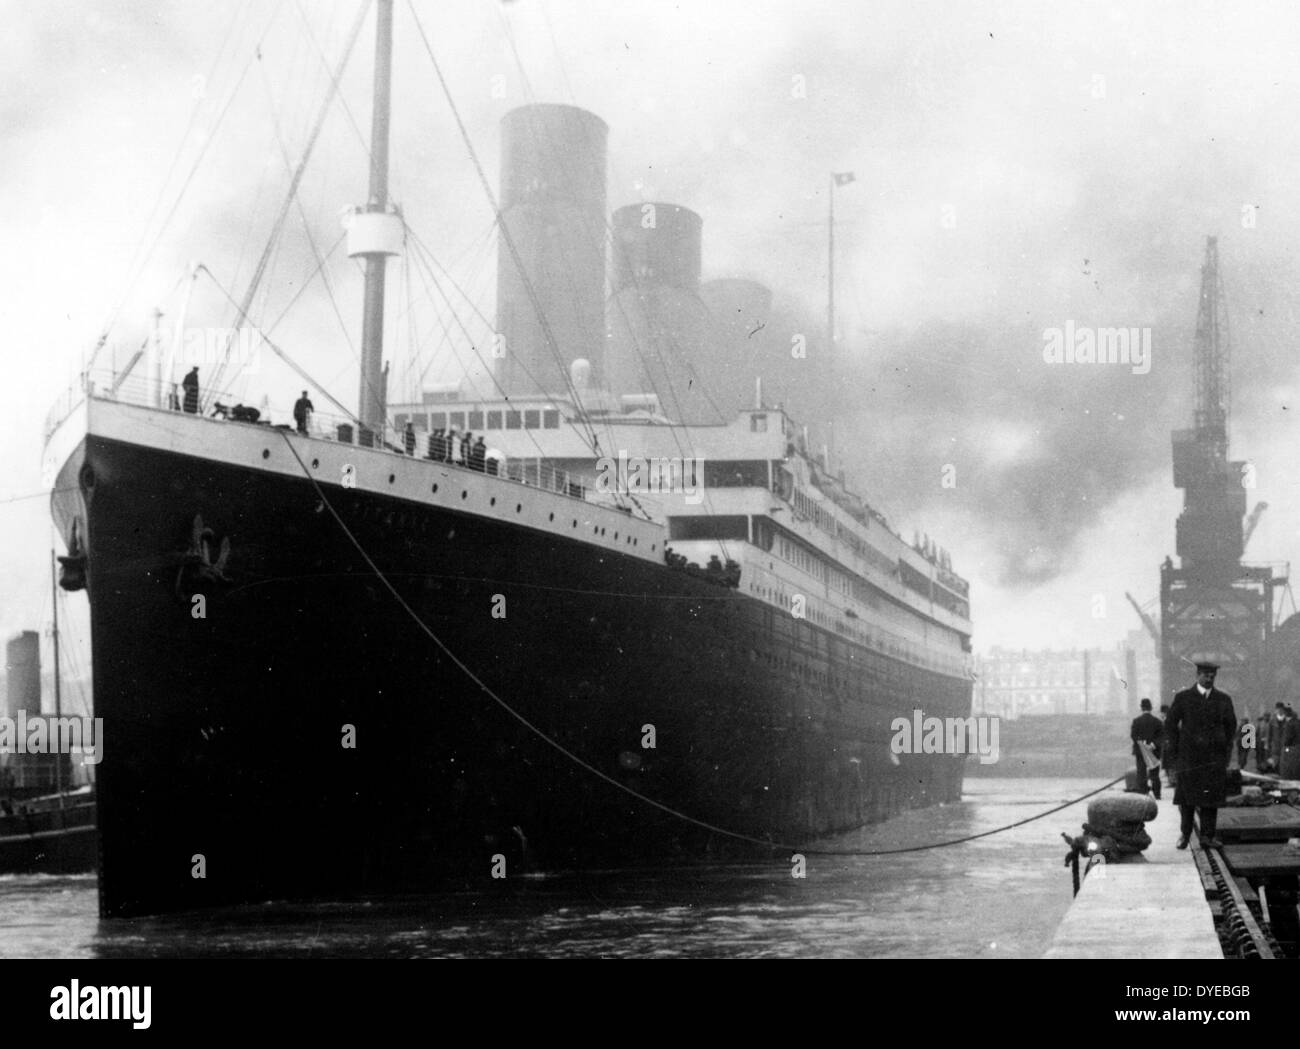 RMS Titanic est un paquebot britannique qui a coulé dans l'Atlantique Nord le 15 avril 1912 après avoir heurté un iceberg lors de son voyage inaugural de Southampton, UK à New York City, États-Unis. Le naufrage du Titanic a causé la mort de 1 502 personnes dans l'une des catastrophes maritimes en temps de paix la plus meurtrière de l'histoire moderne. Banque D'Images